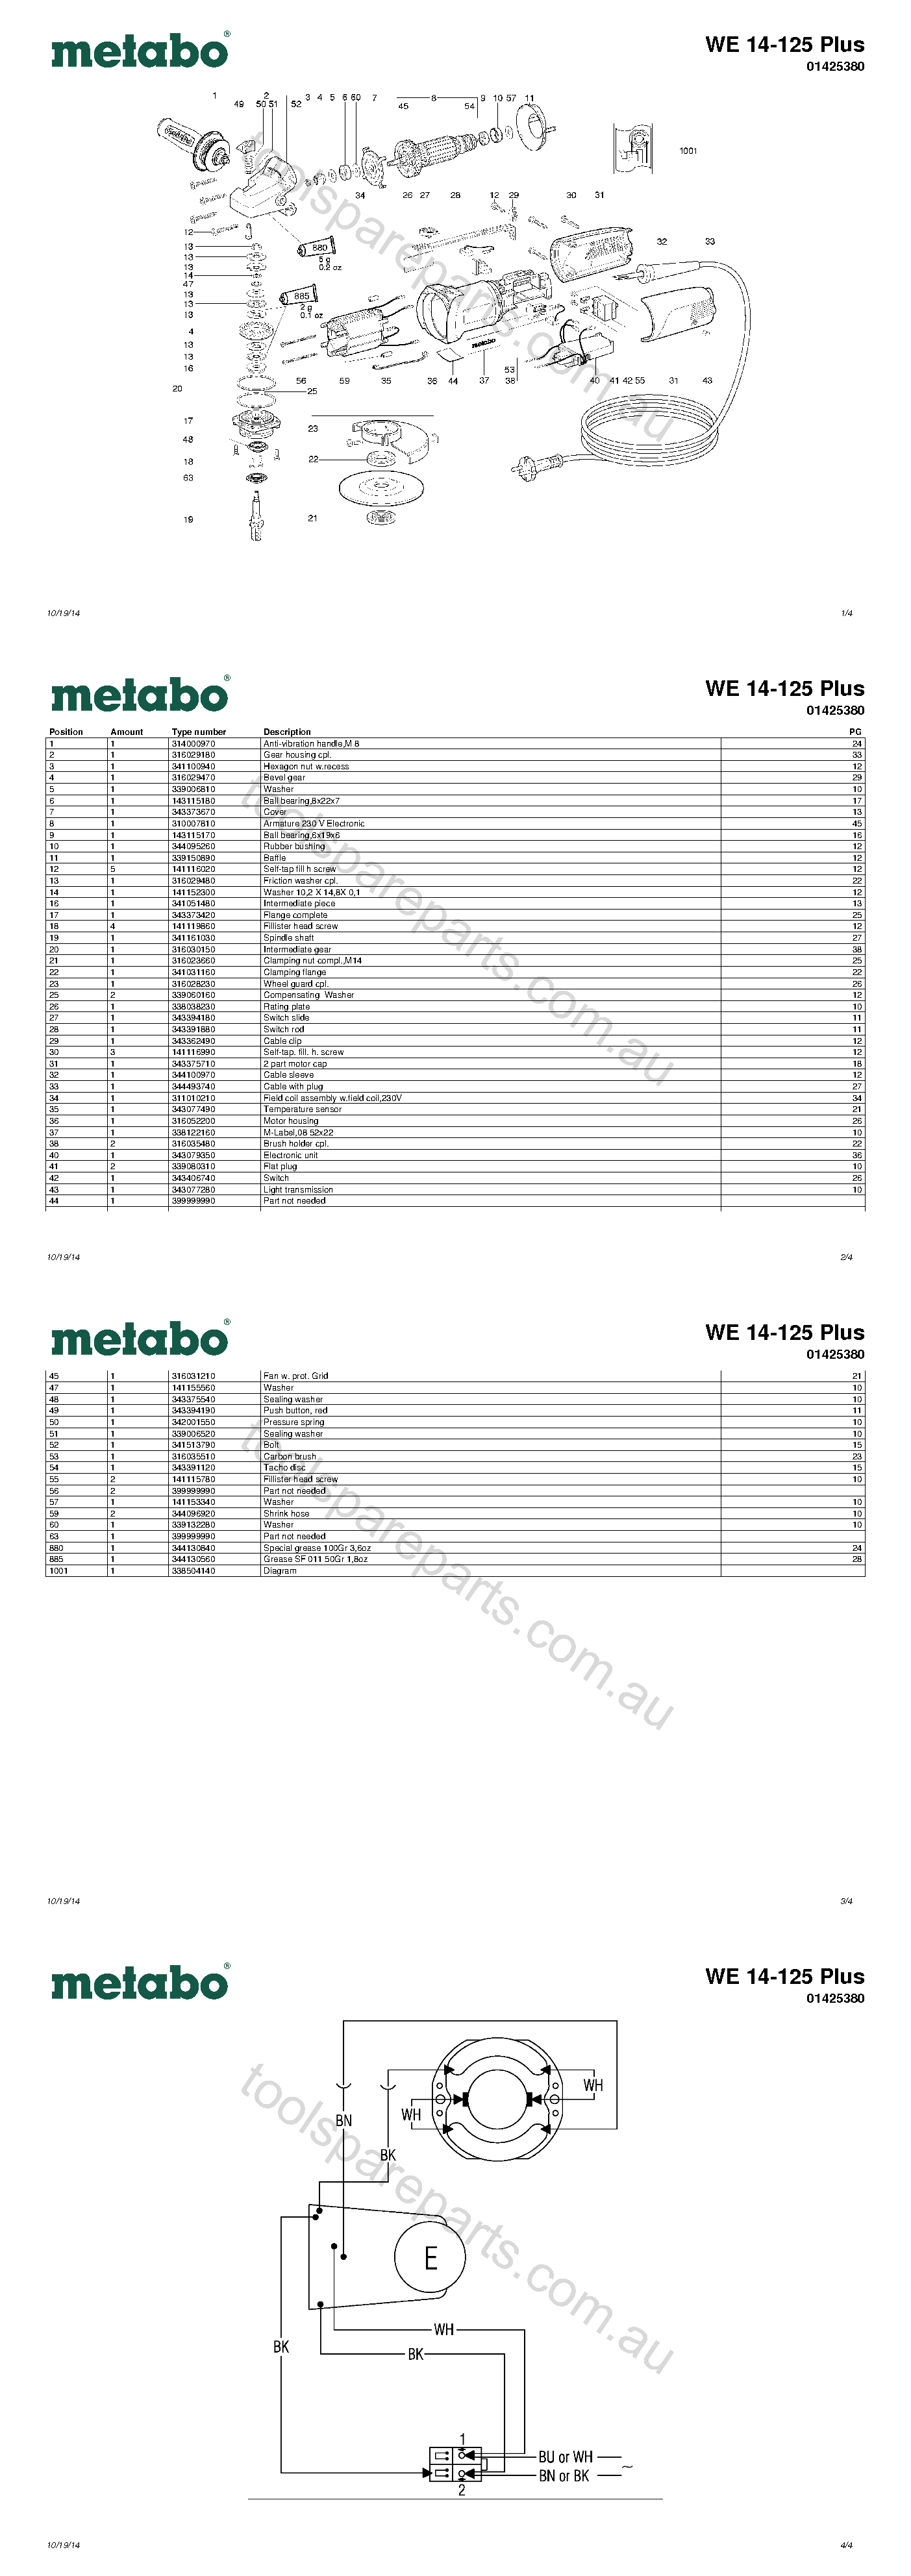 Metabo WE 14-125 Plus 01425380  Diagram 1